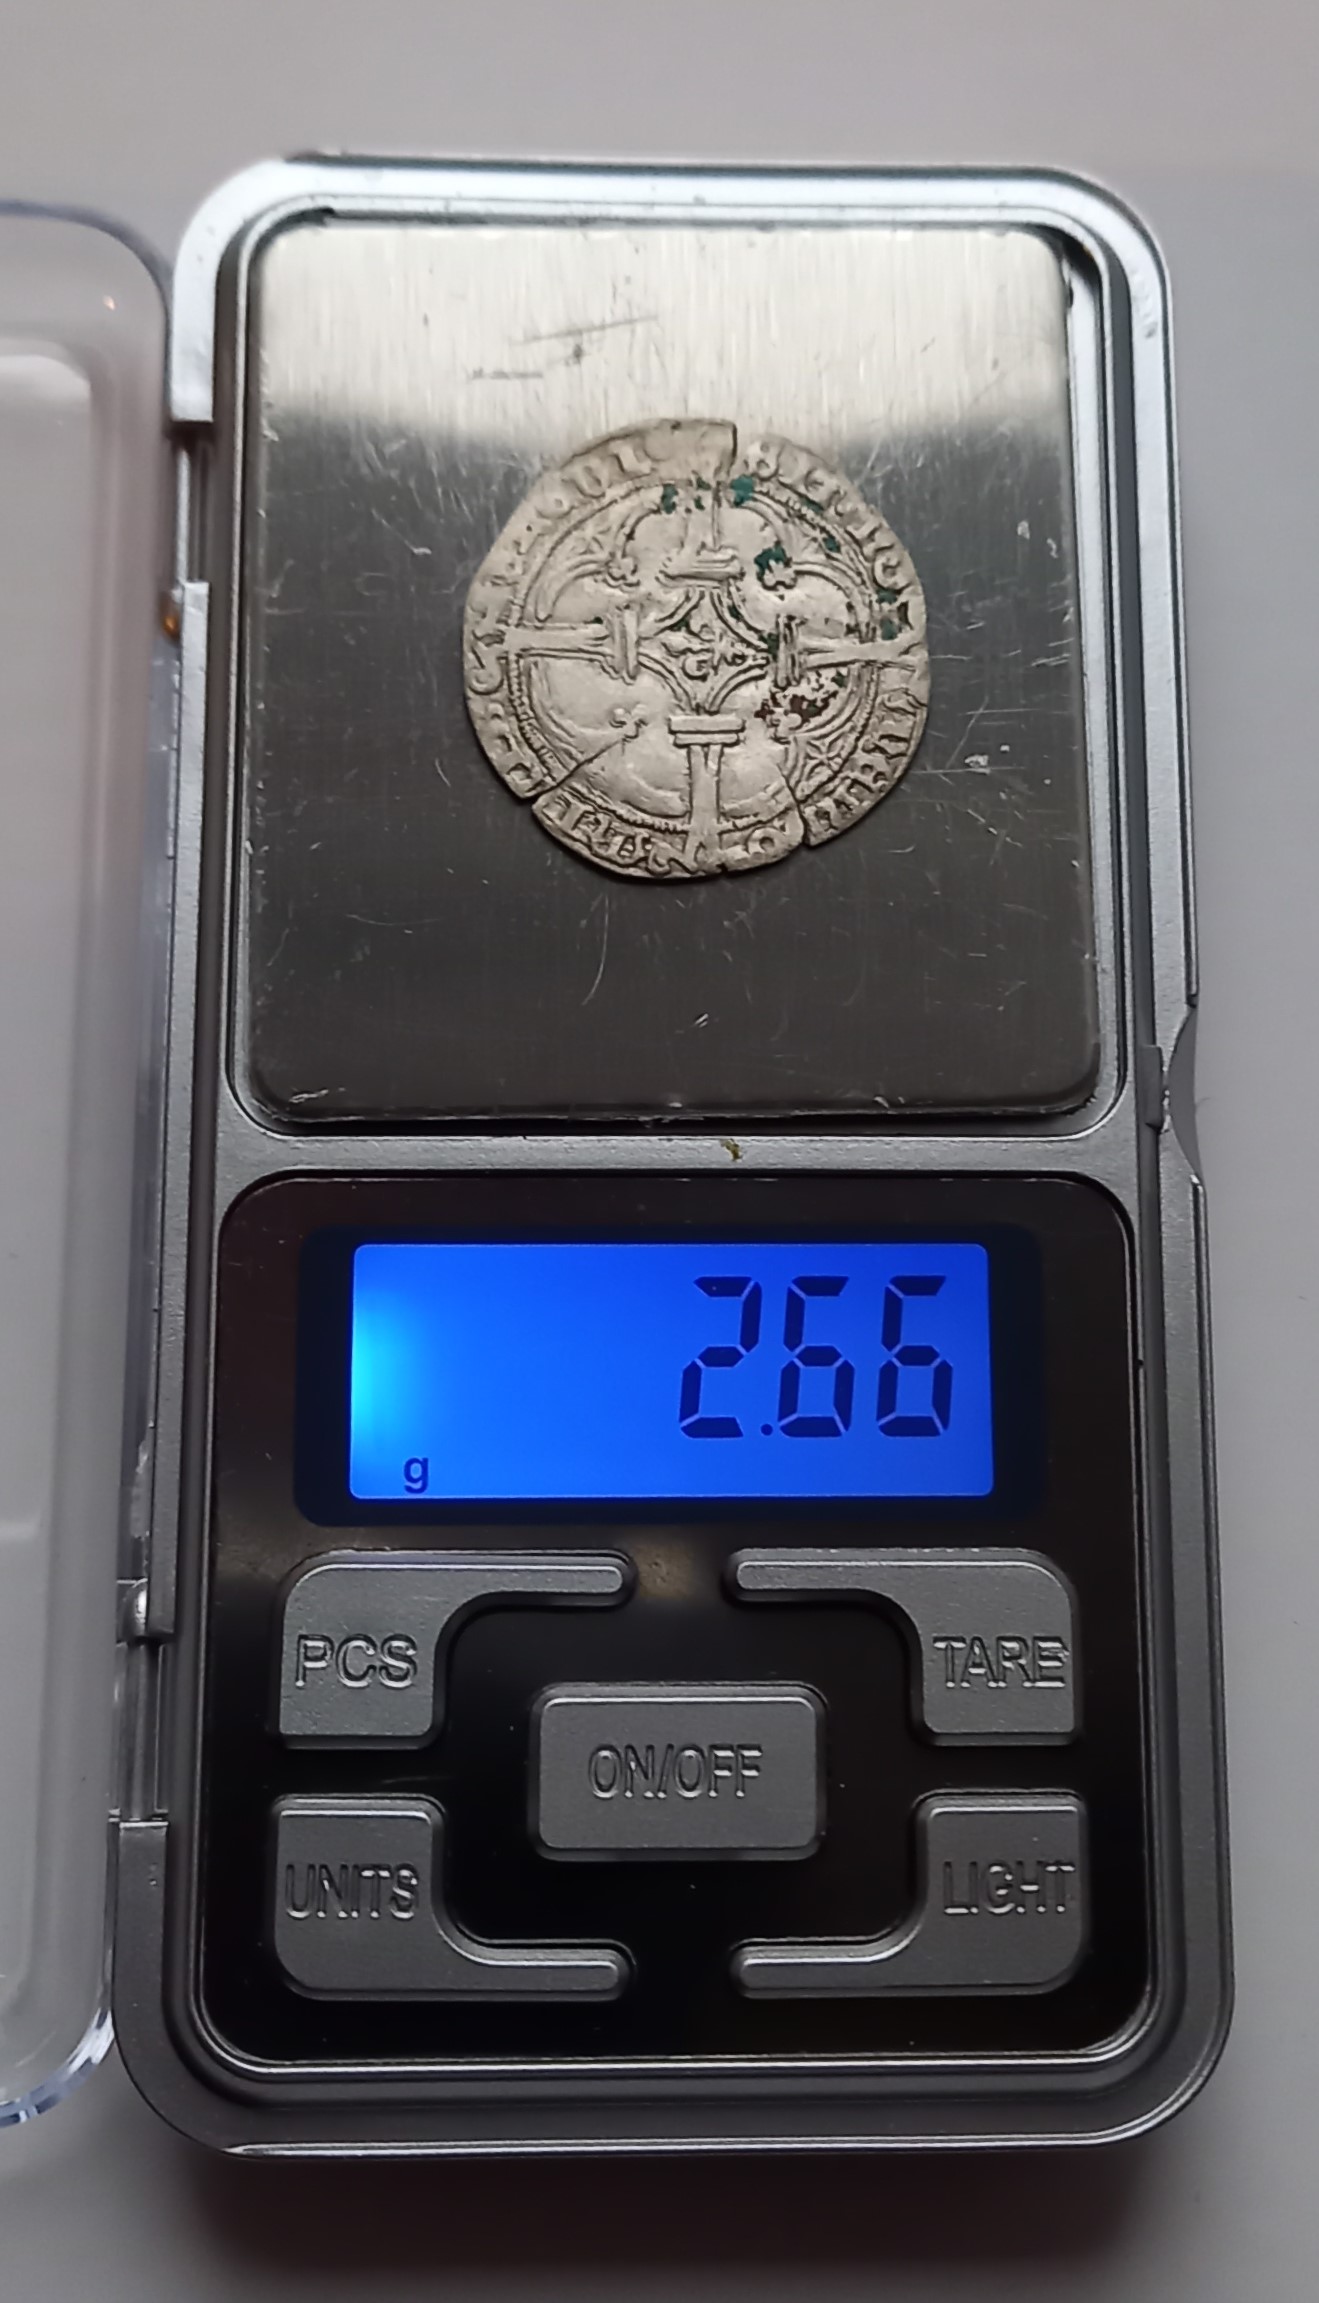 2018-Muntschat van Dirksland: Super dunne zilvere munten die maar 1-3 gram wegen